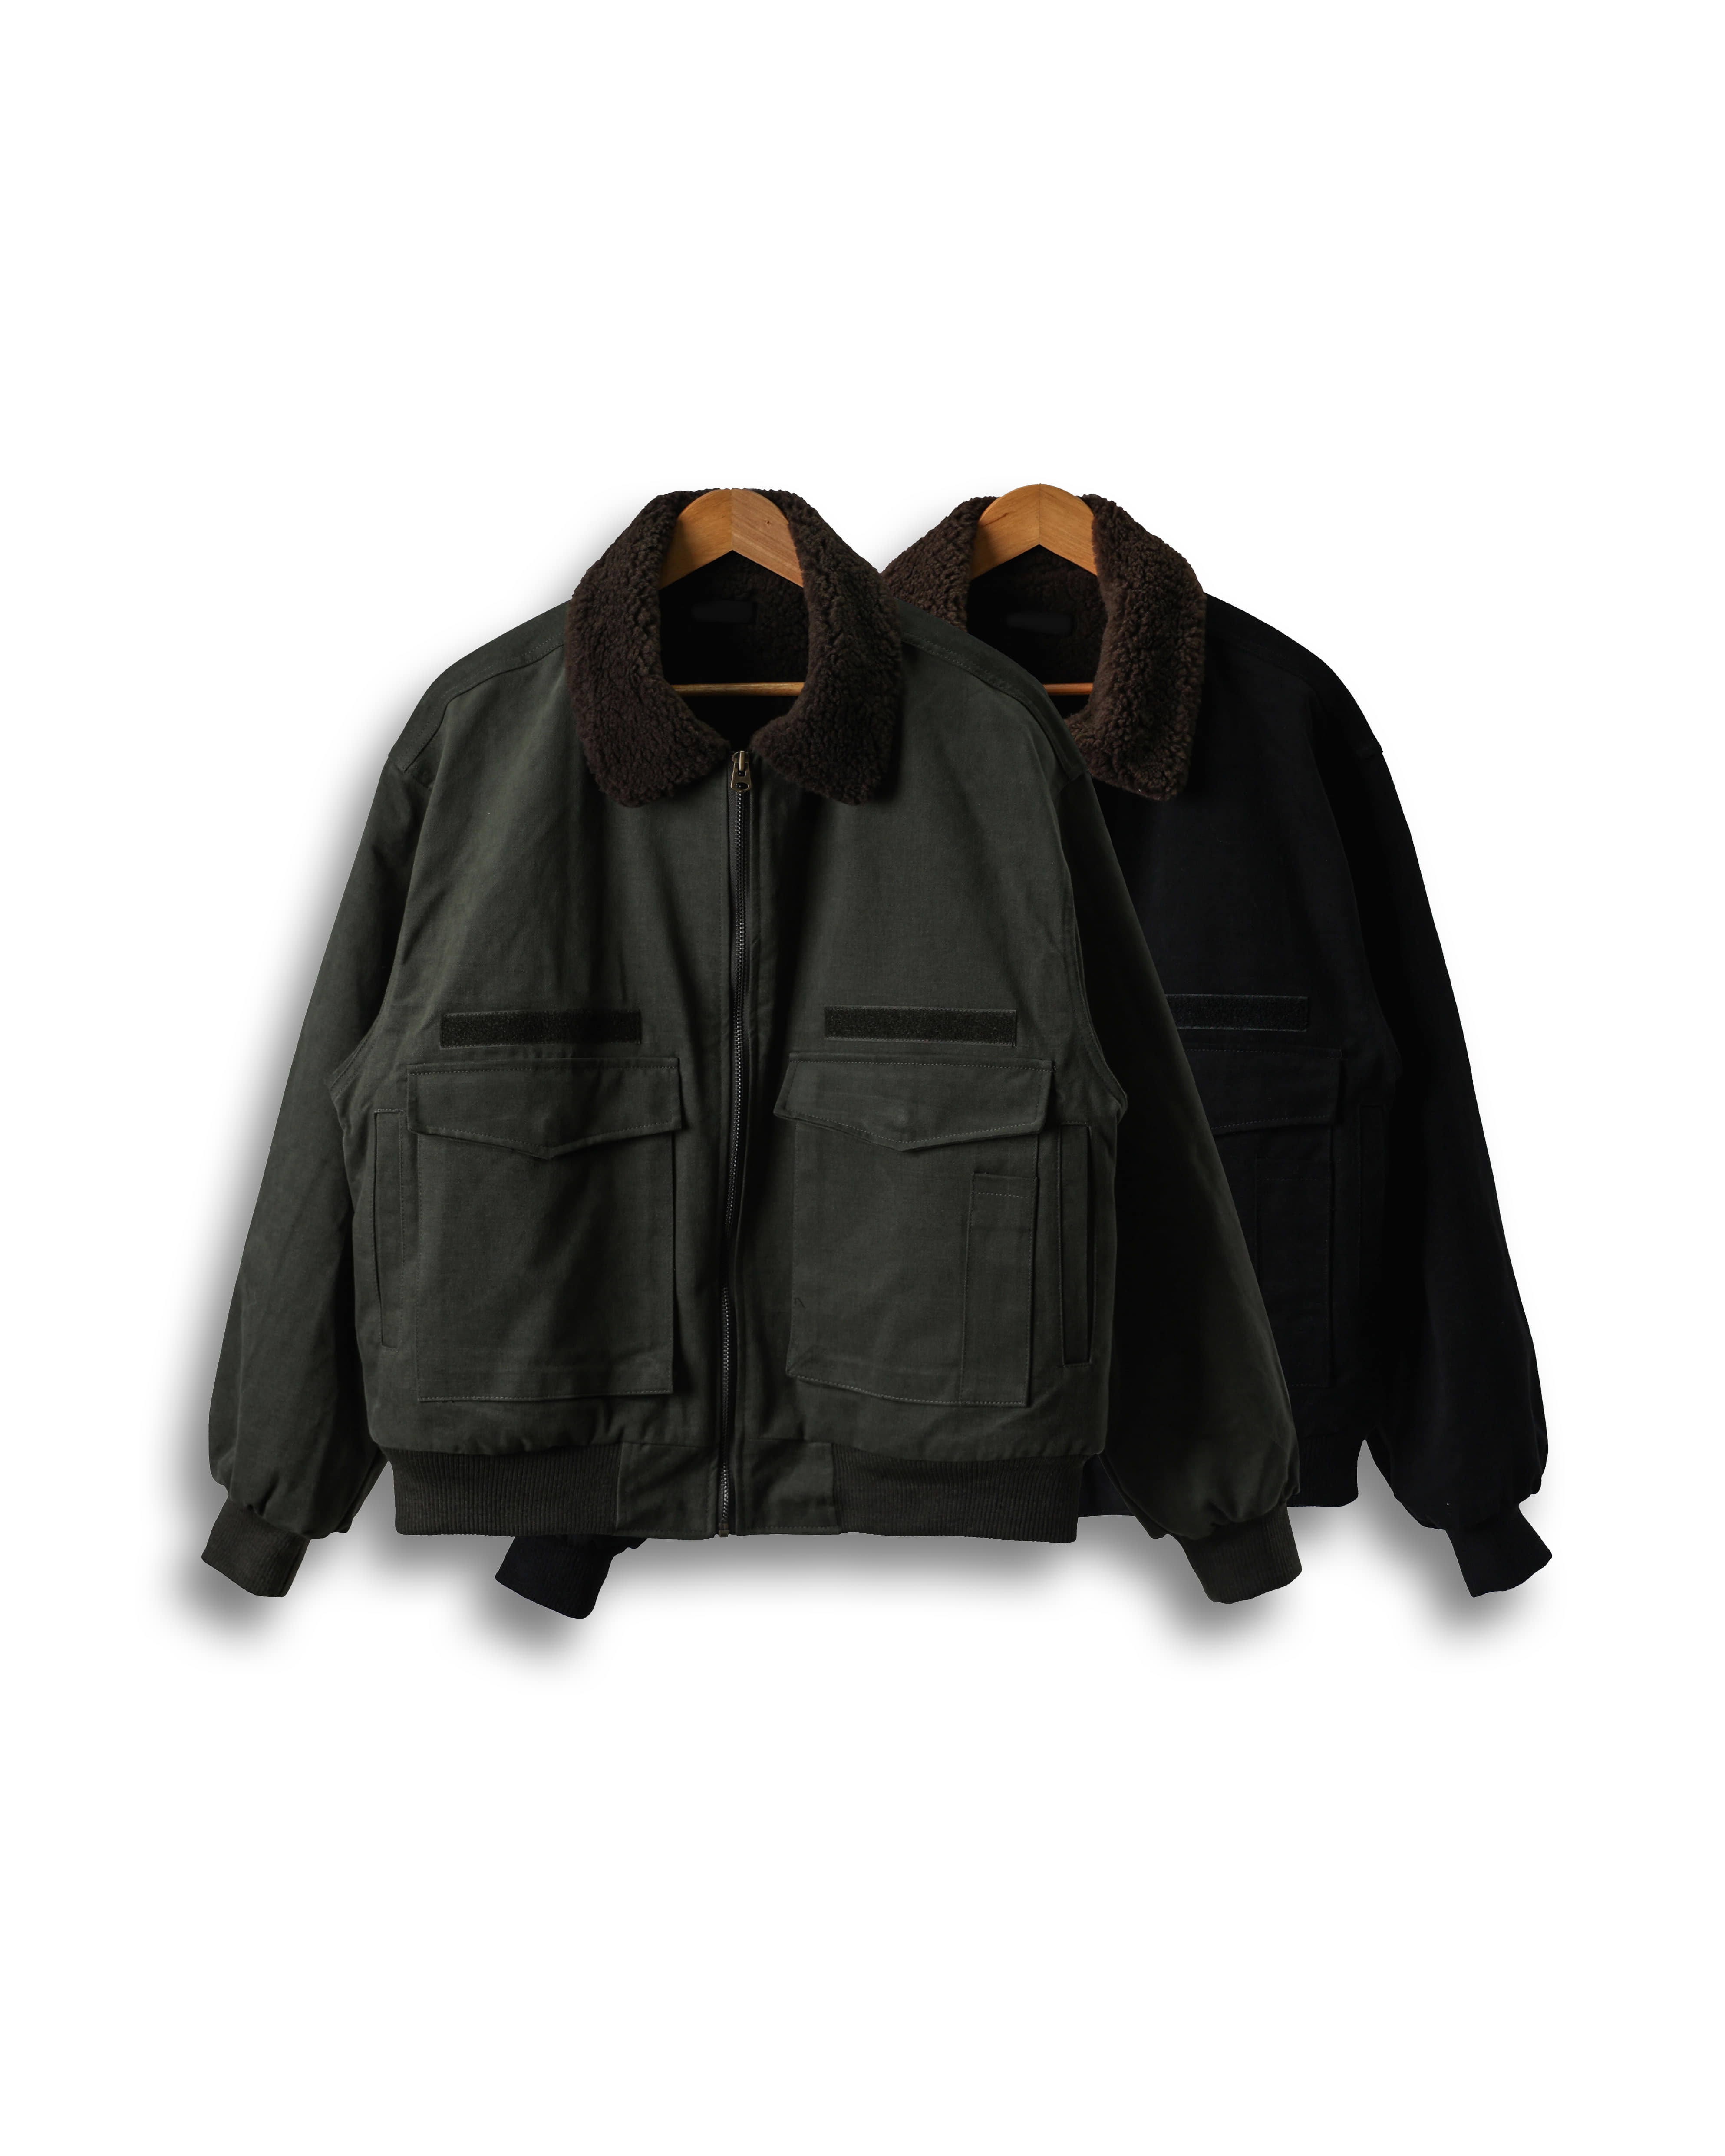 OTHER Fleece Dumbling Deck Jacket (Black/Khaki)